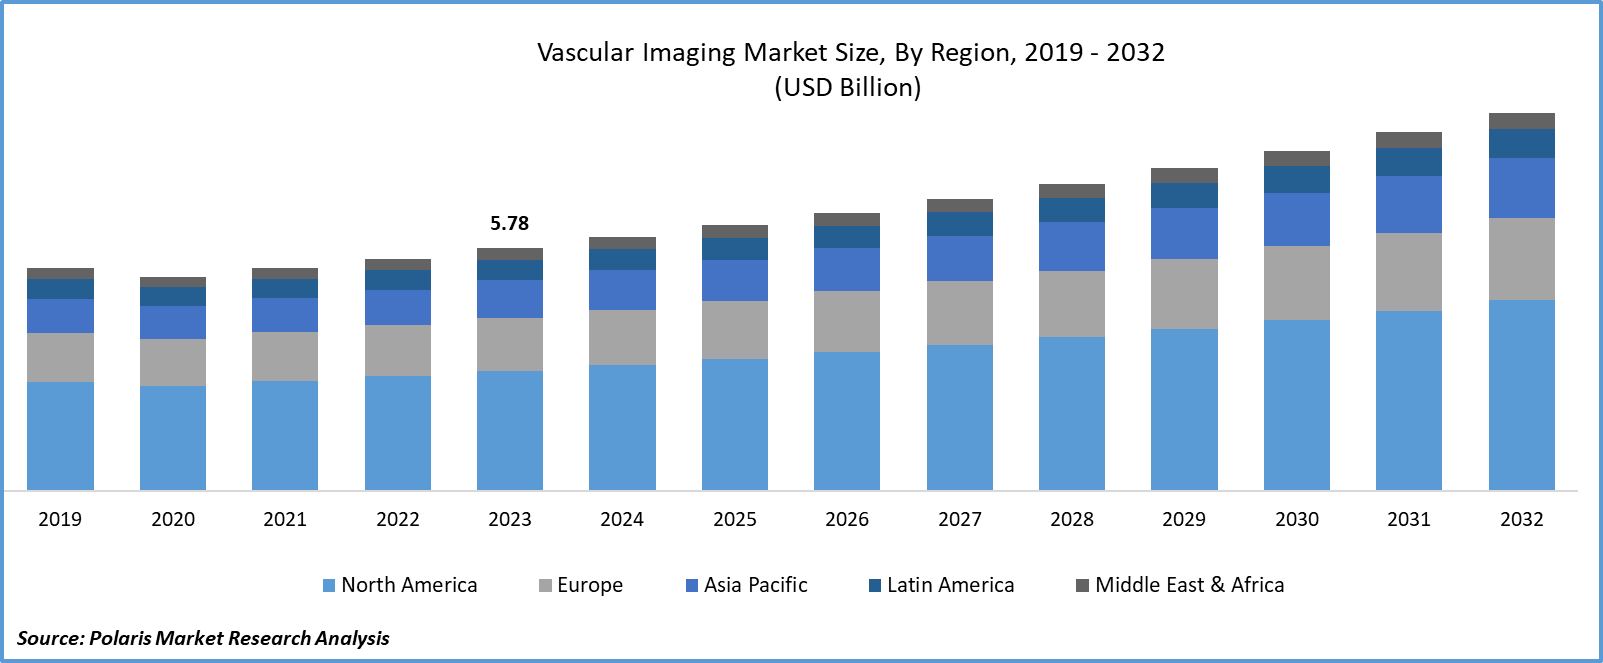 Vascular Imaging Market Size